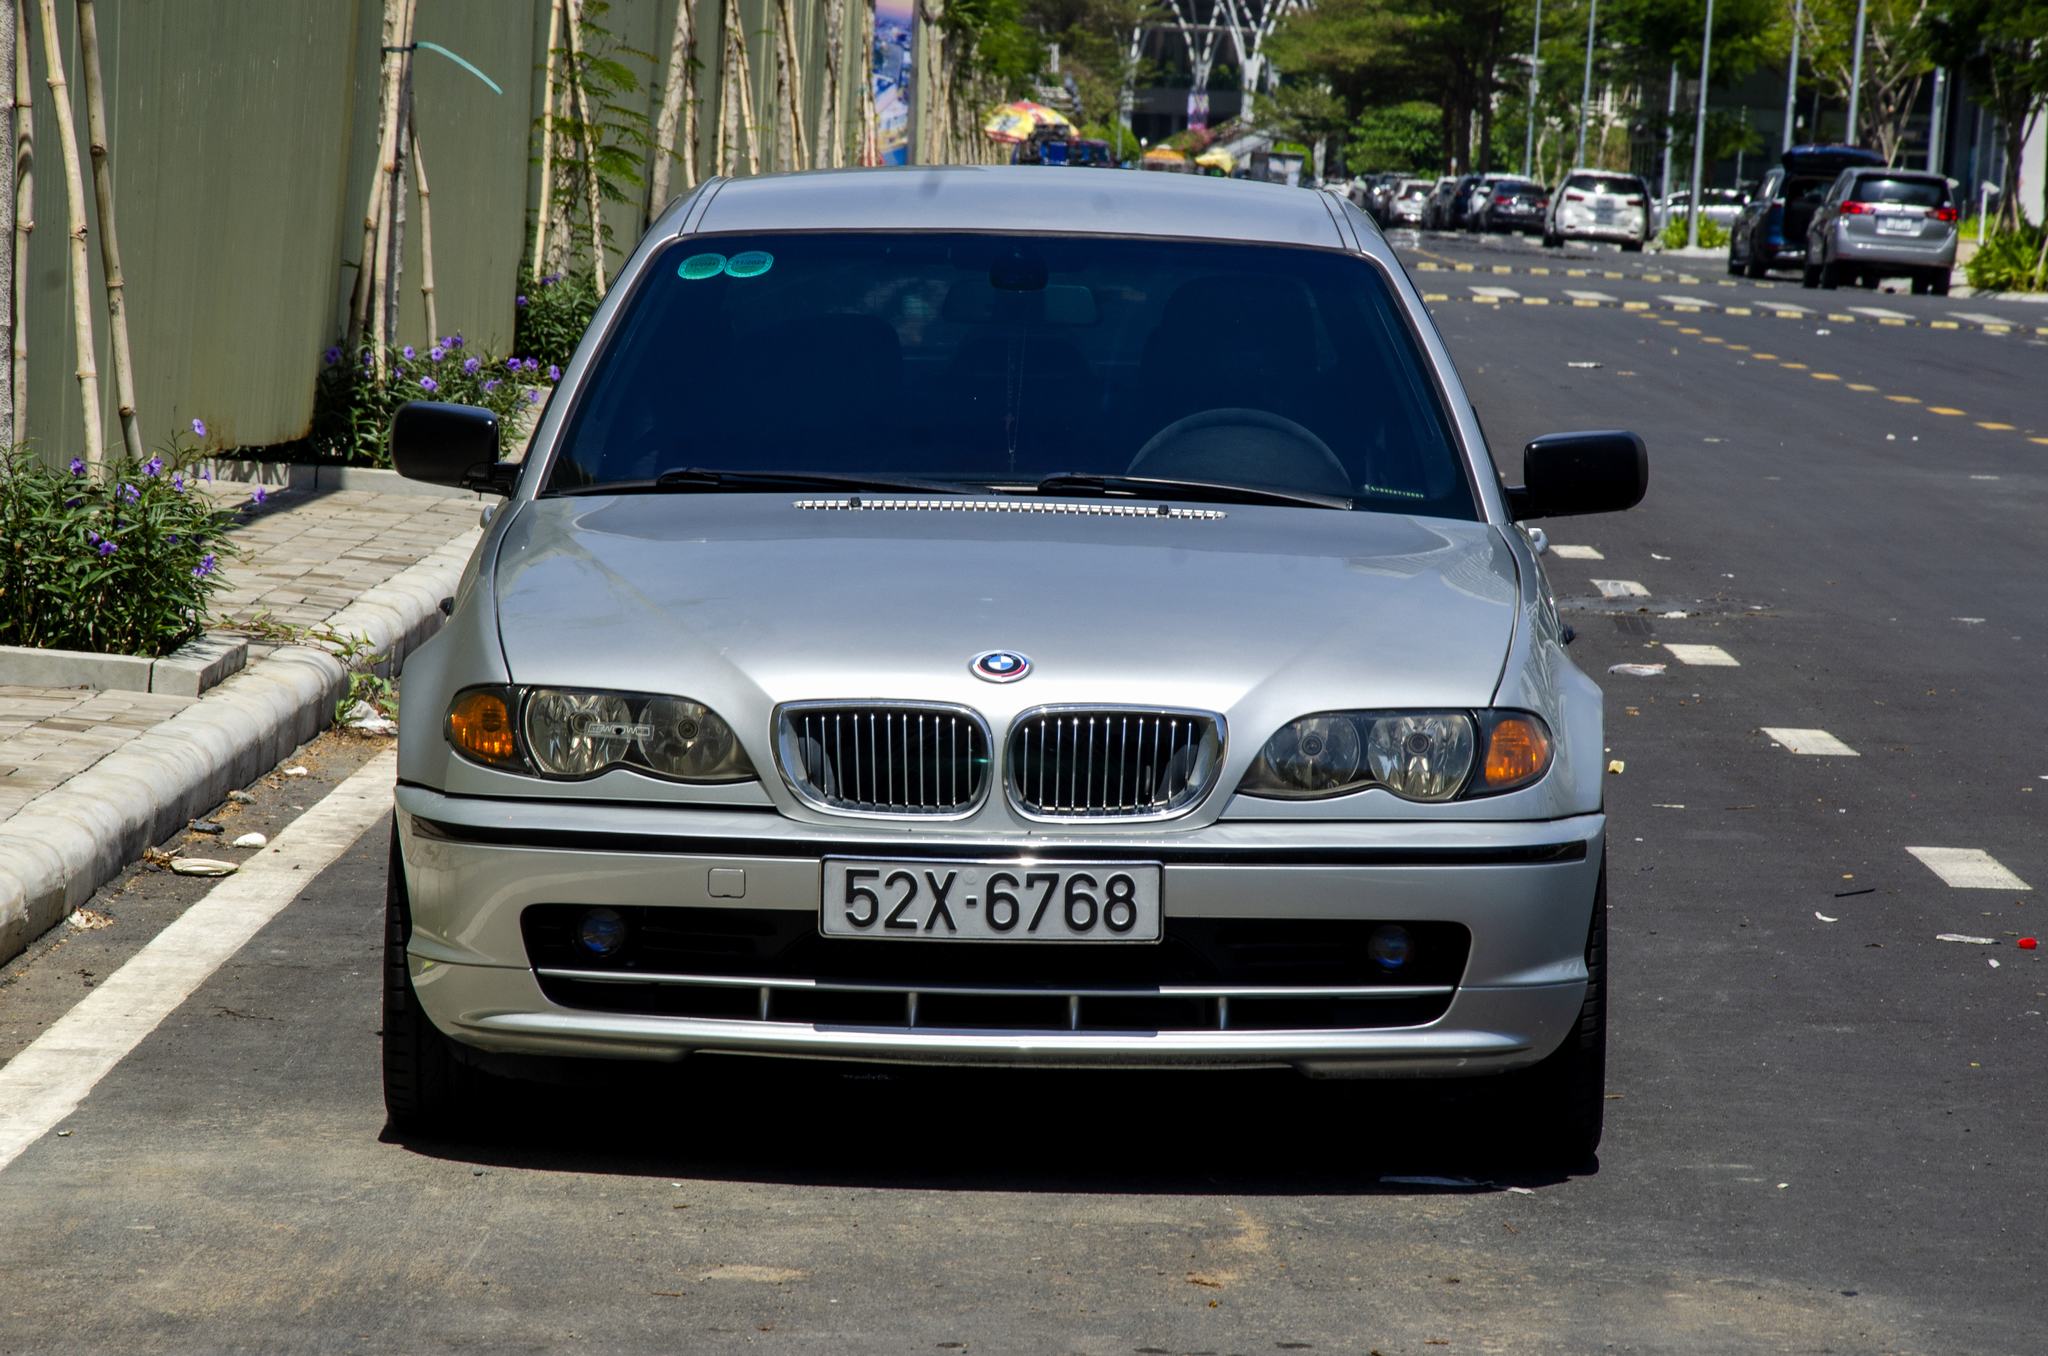 BMW-E46-52X-67686